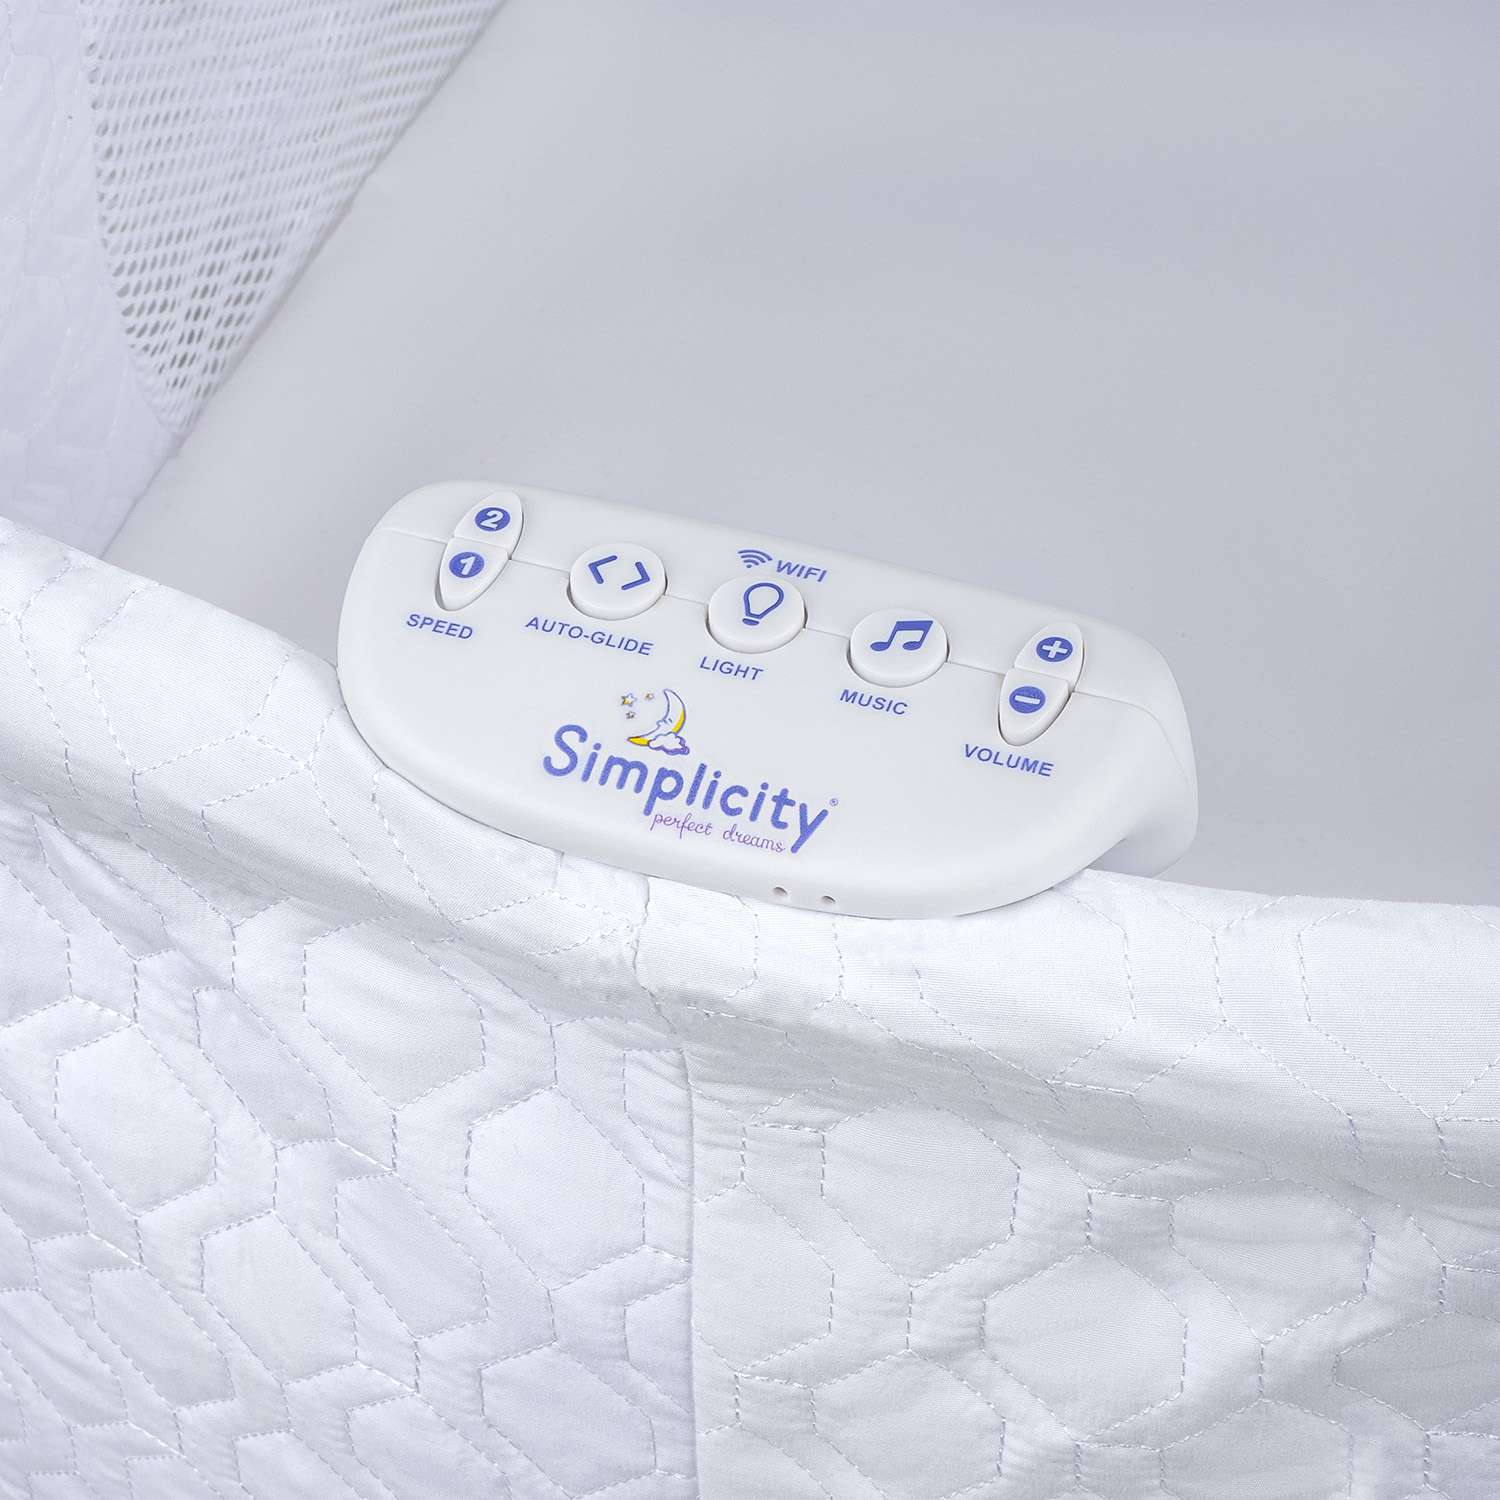 Колыбель-кроватка Simplicity GL4090 Elite romby white - фото 29